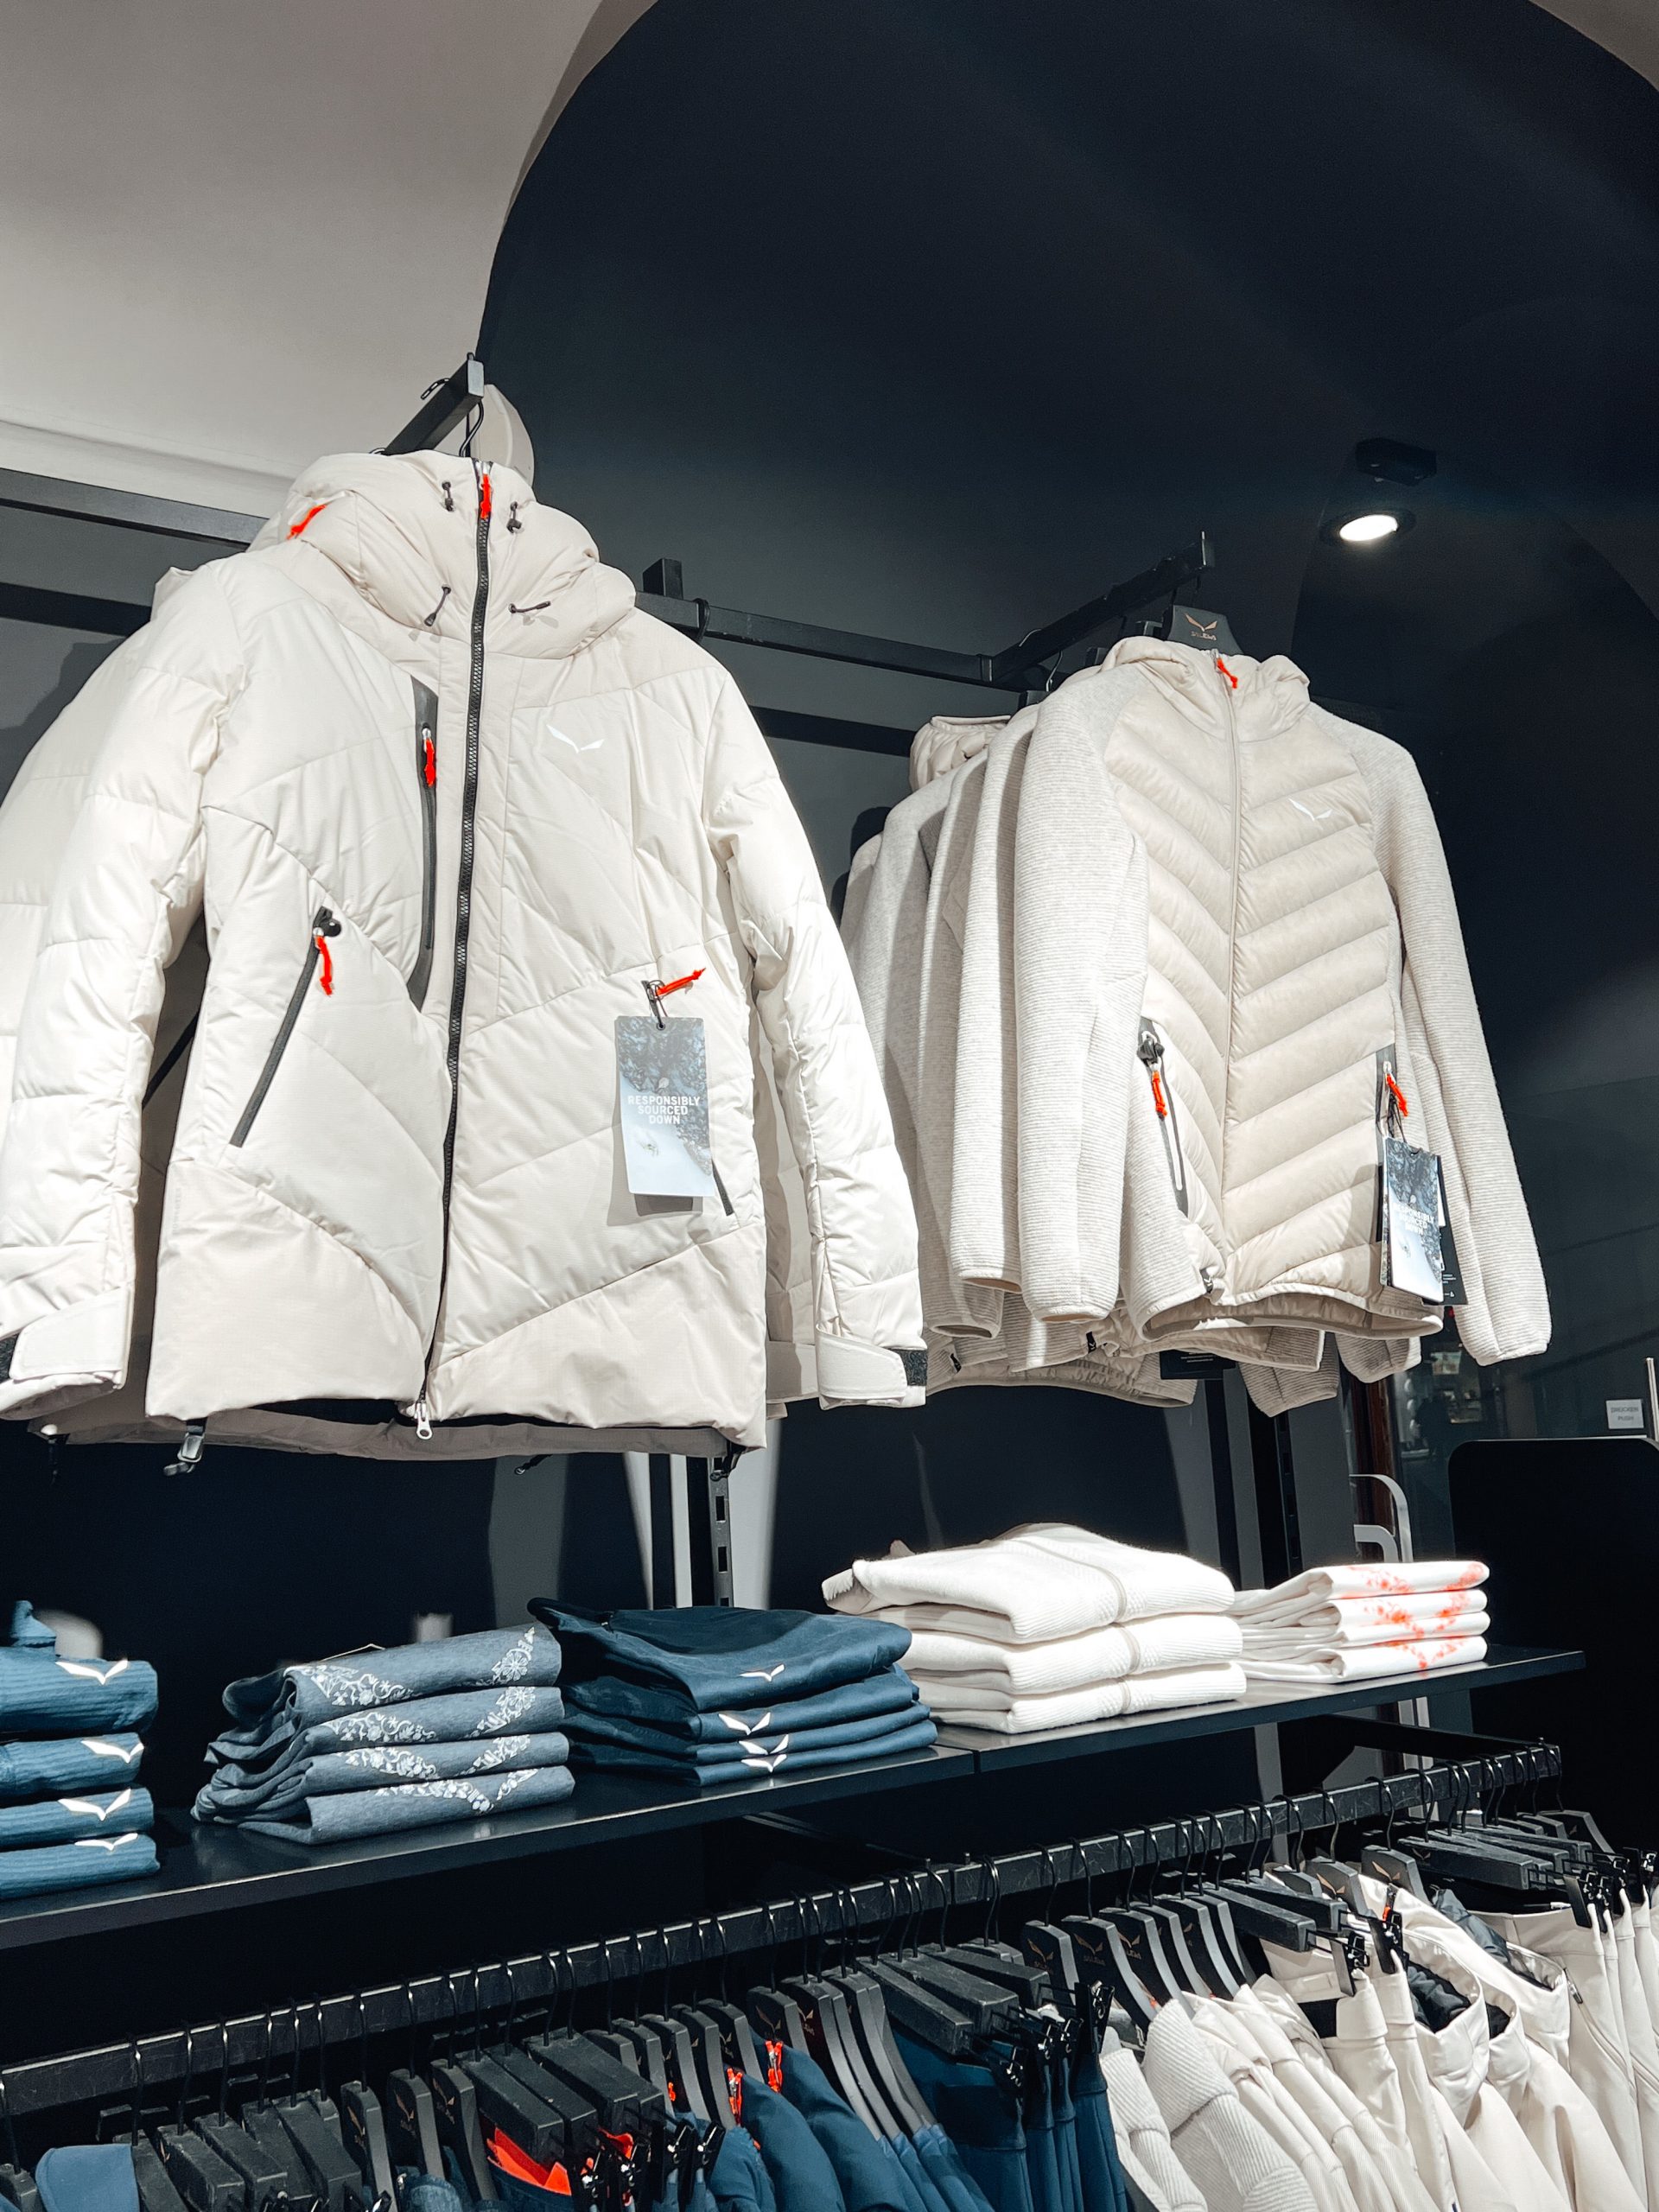 mehrere weiße Jacken und weiße sowie blaue Skibekleidung auf Kleiderstangen in einem Geschäft